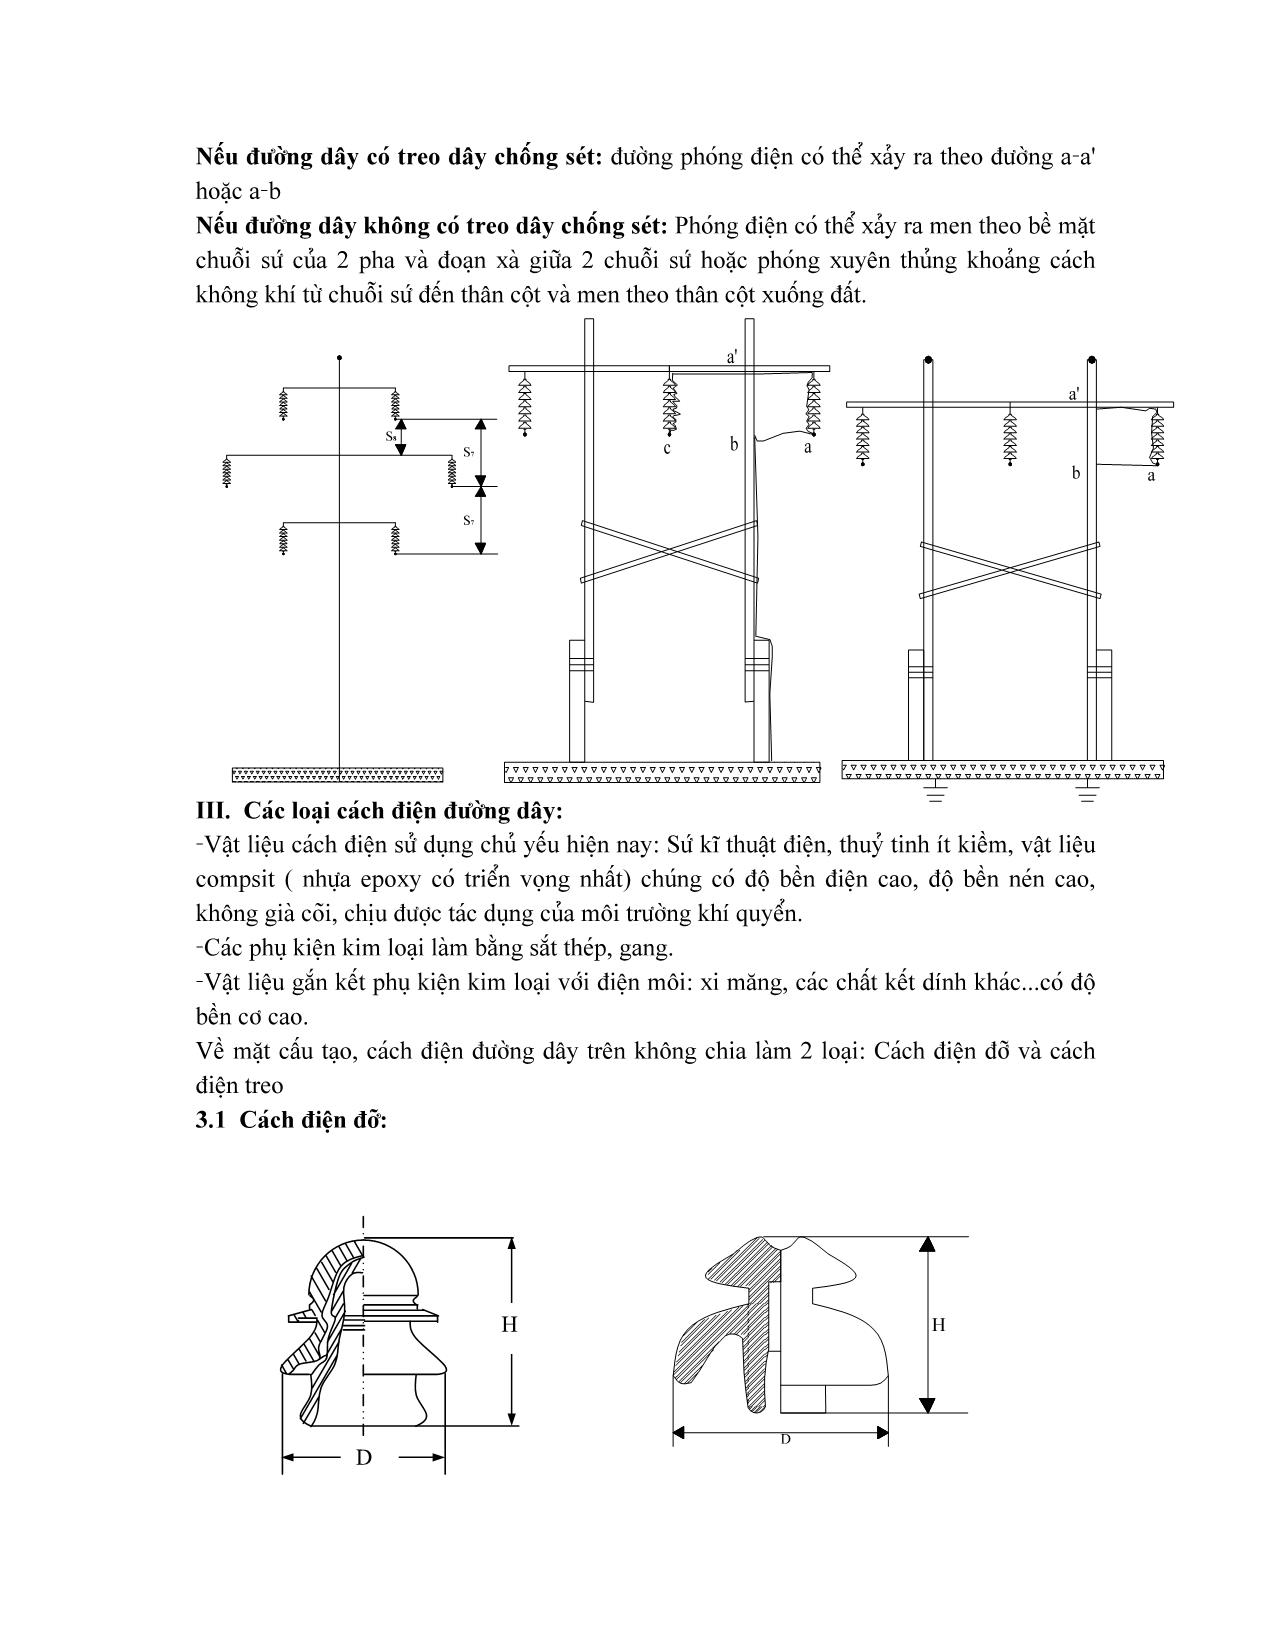 Giáo trình Vật liệu điện - Chương 12: Thực hiện cách điện cho đường dây tải điện trên không trang 2